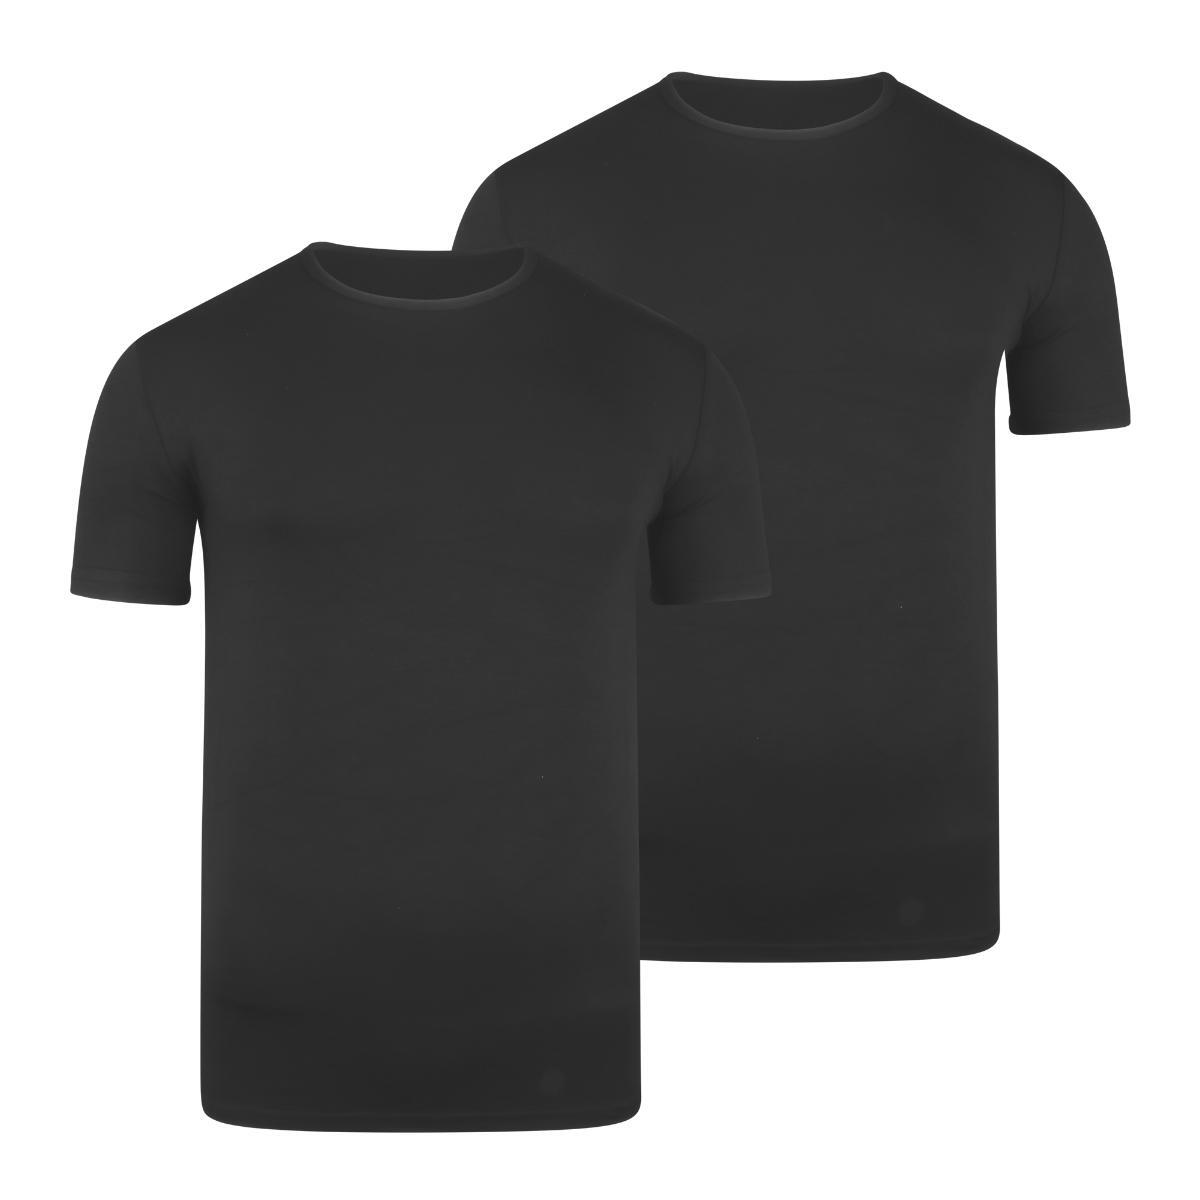 BOXR | T-shirt en bambou - Lot de 2 - Noir